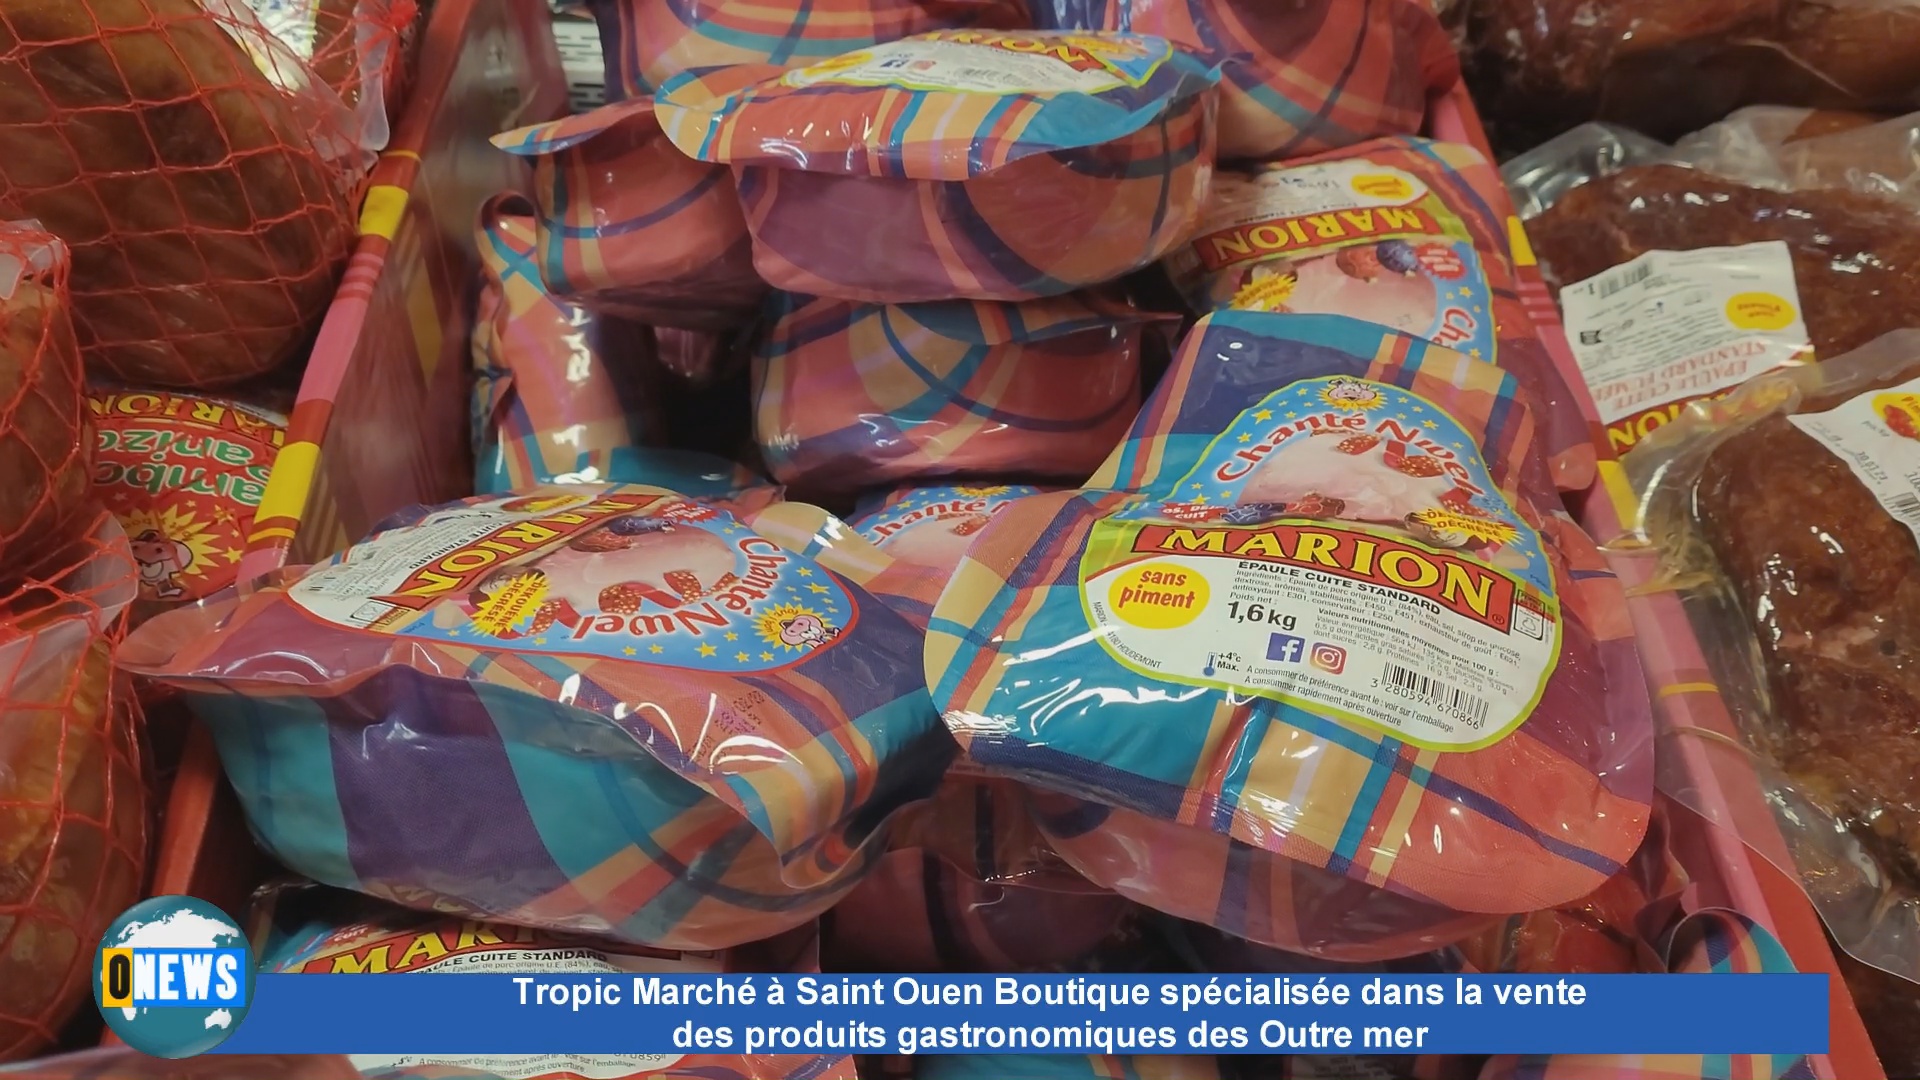 [Vidéo] Tropic Marché à Saint Ouen Boutique spécialisée dans la vente des produits gastronomiques des Outre mer